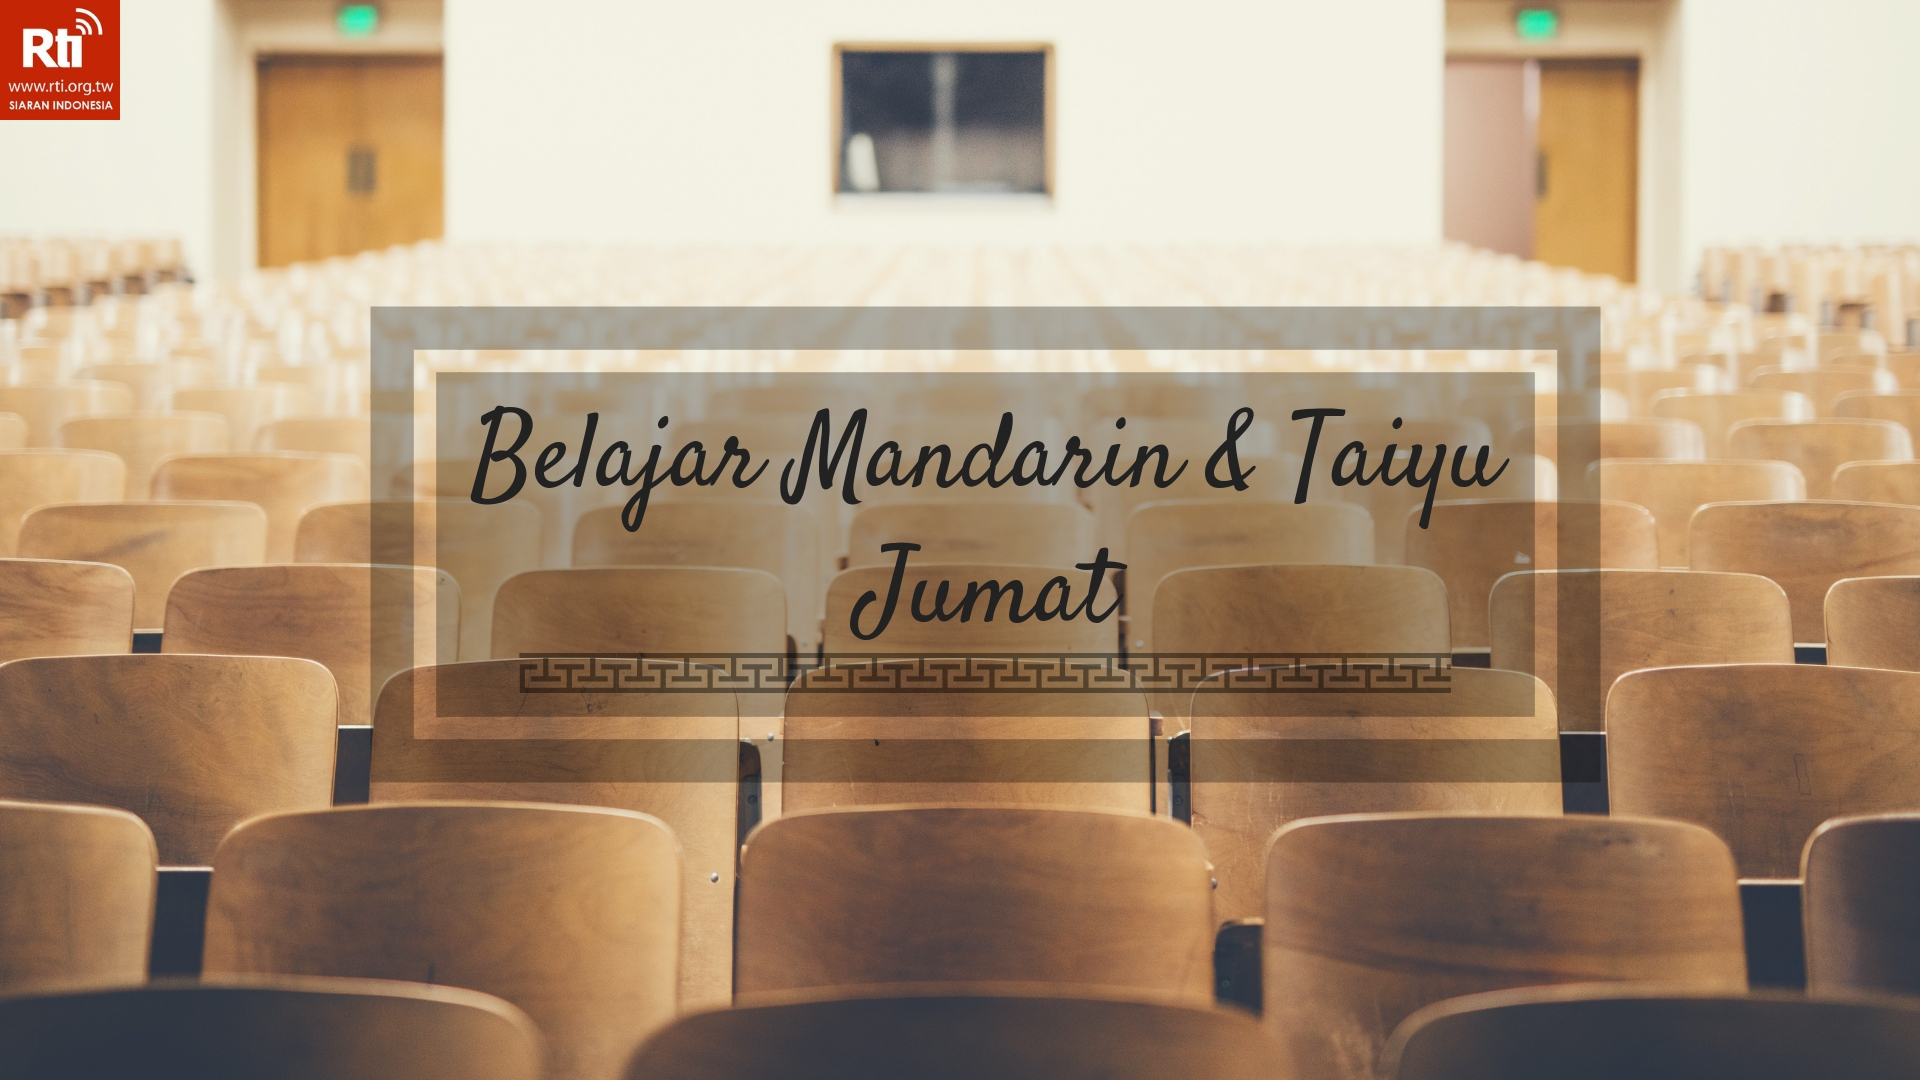 Belajar Mandarin & Taiyu Jumat